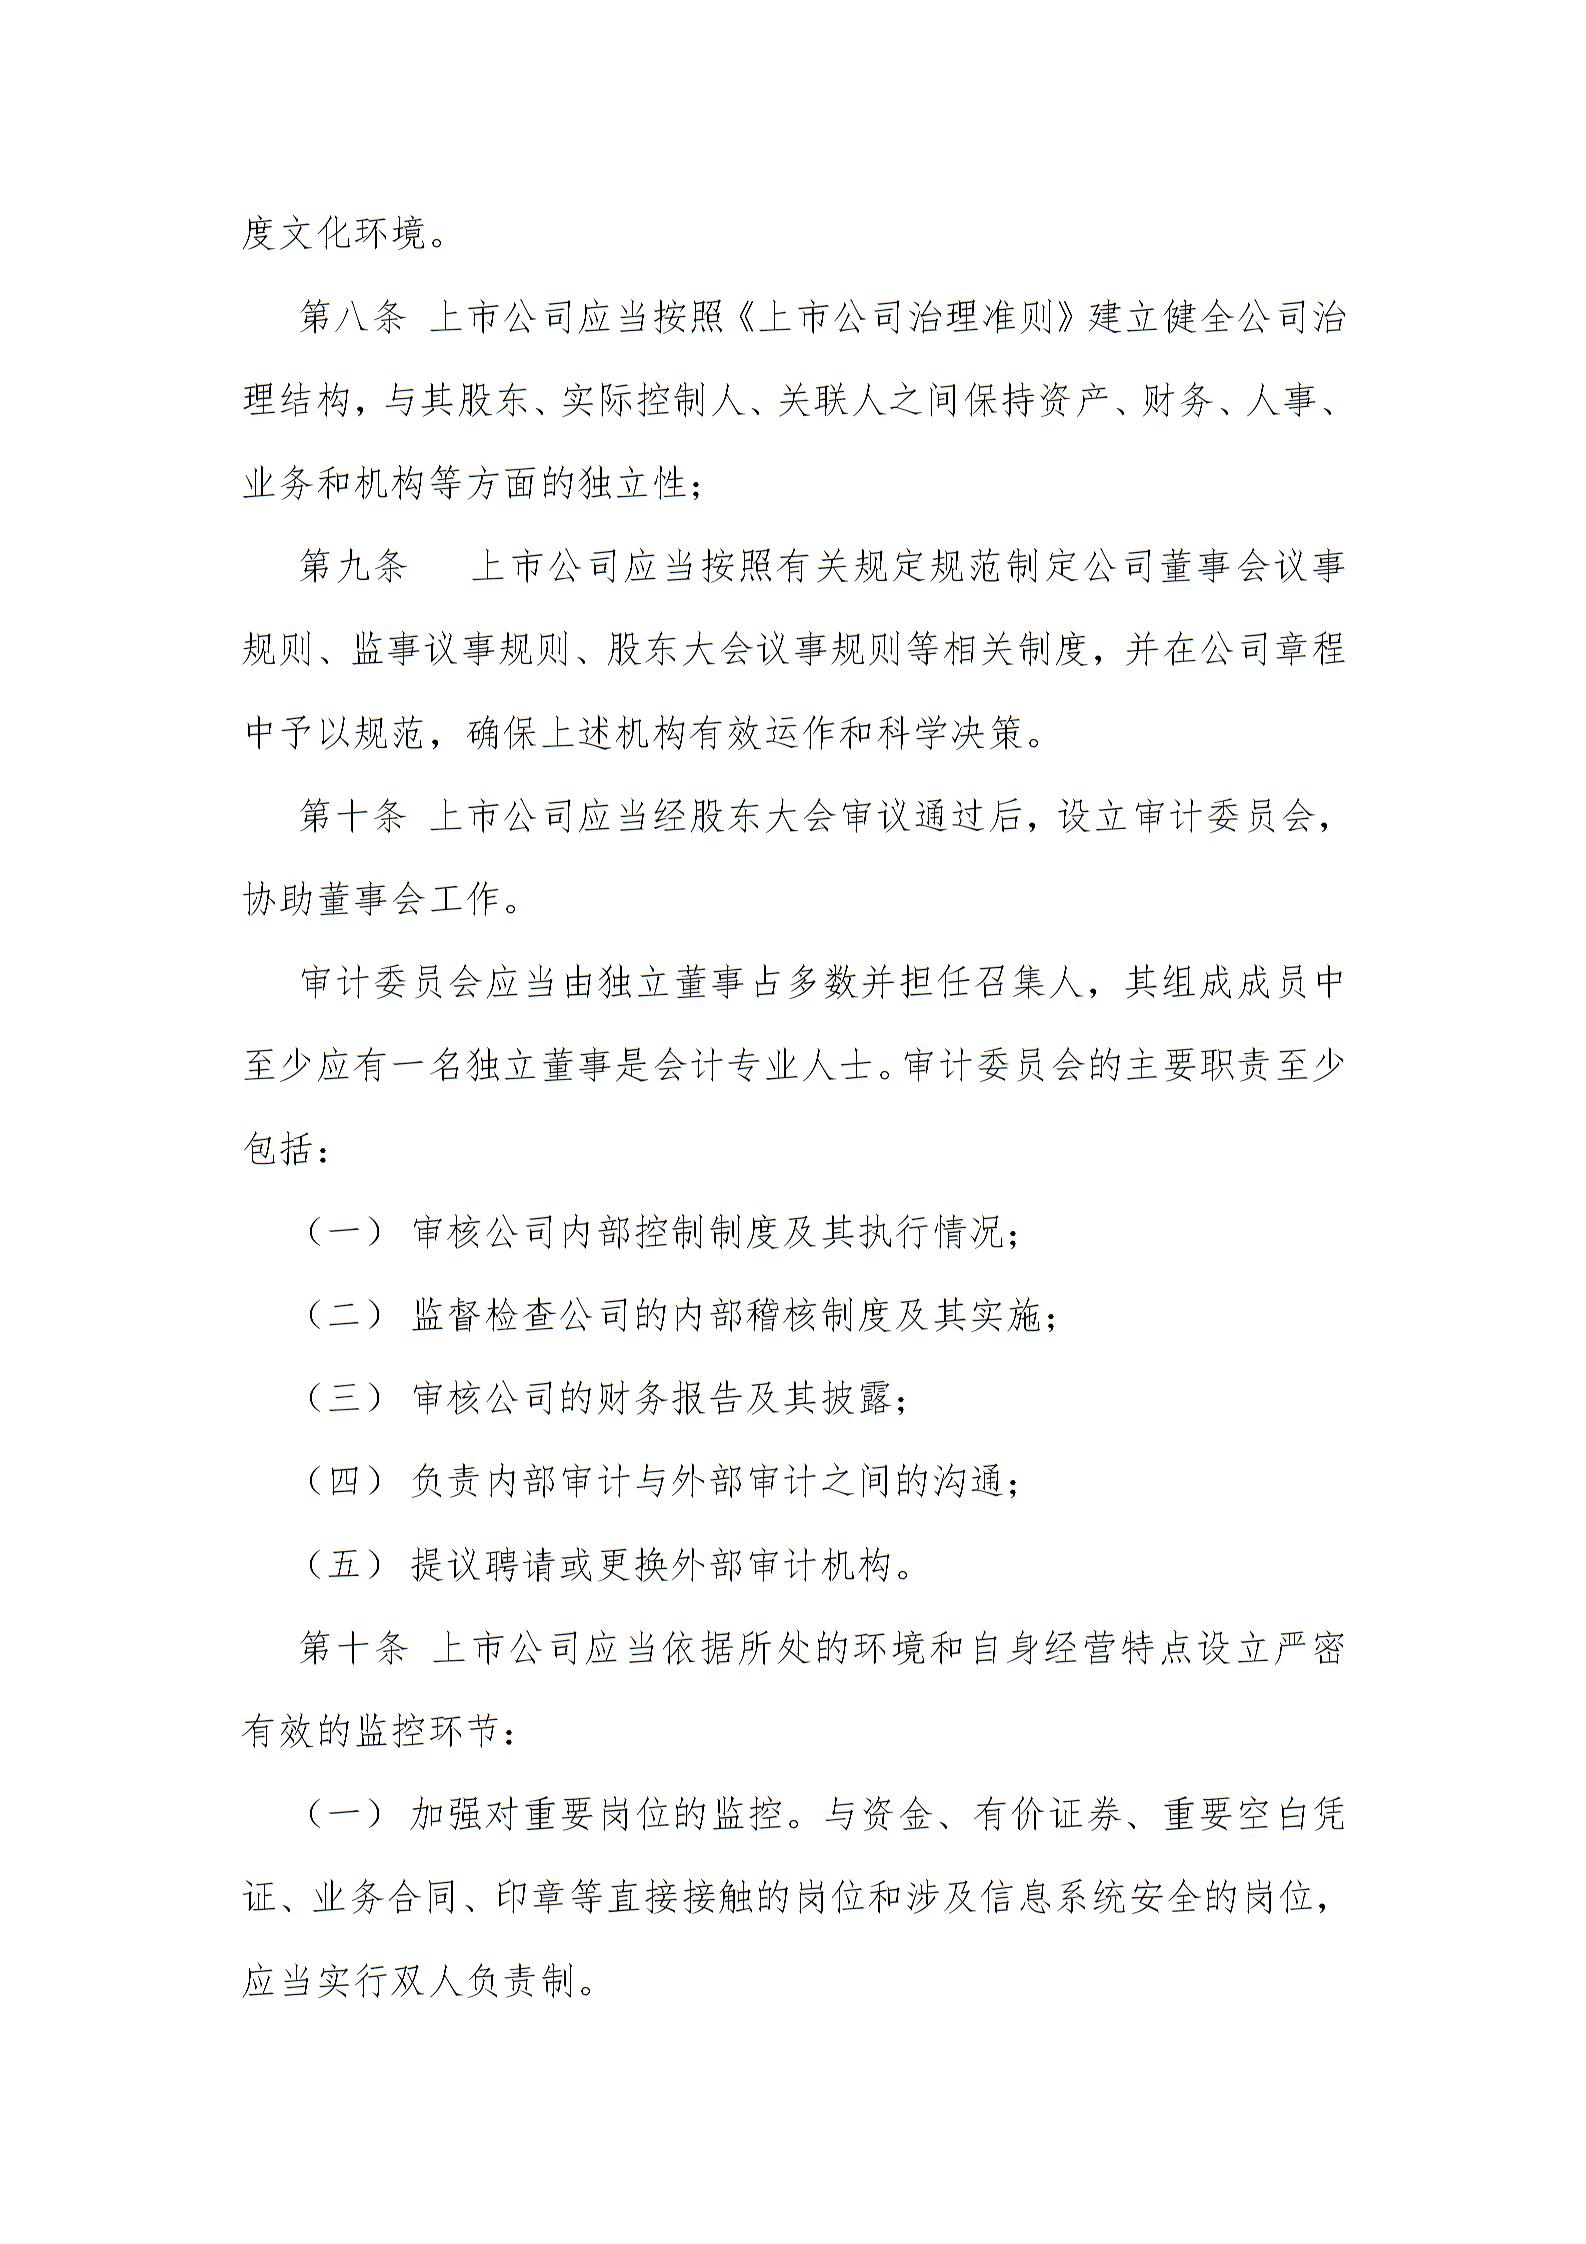 深圳证券交易所上市公司内部控制指引1图片2